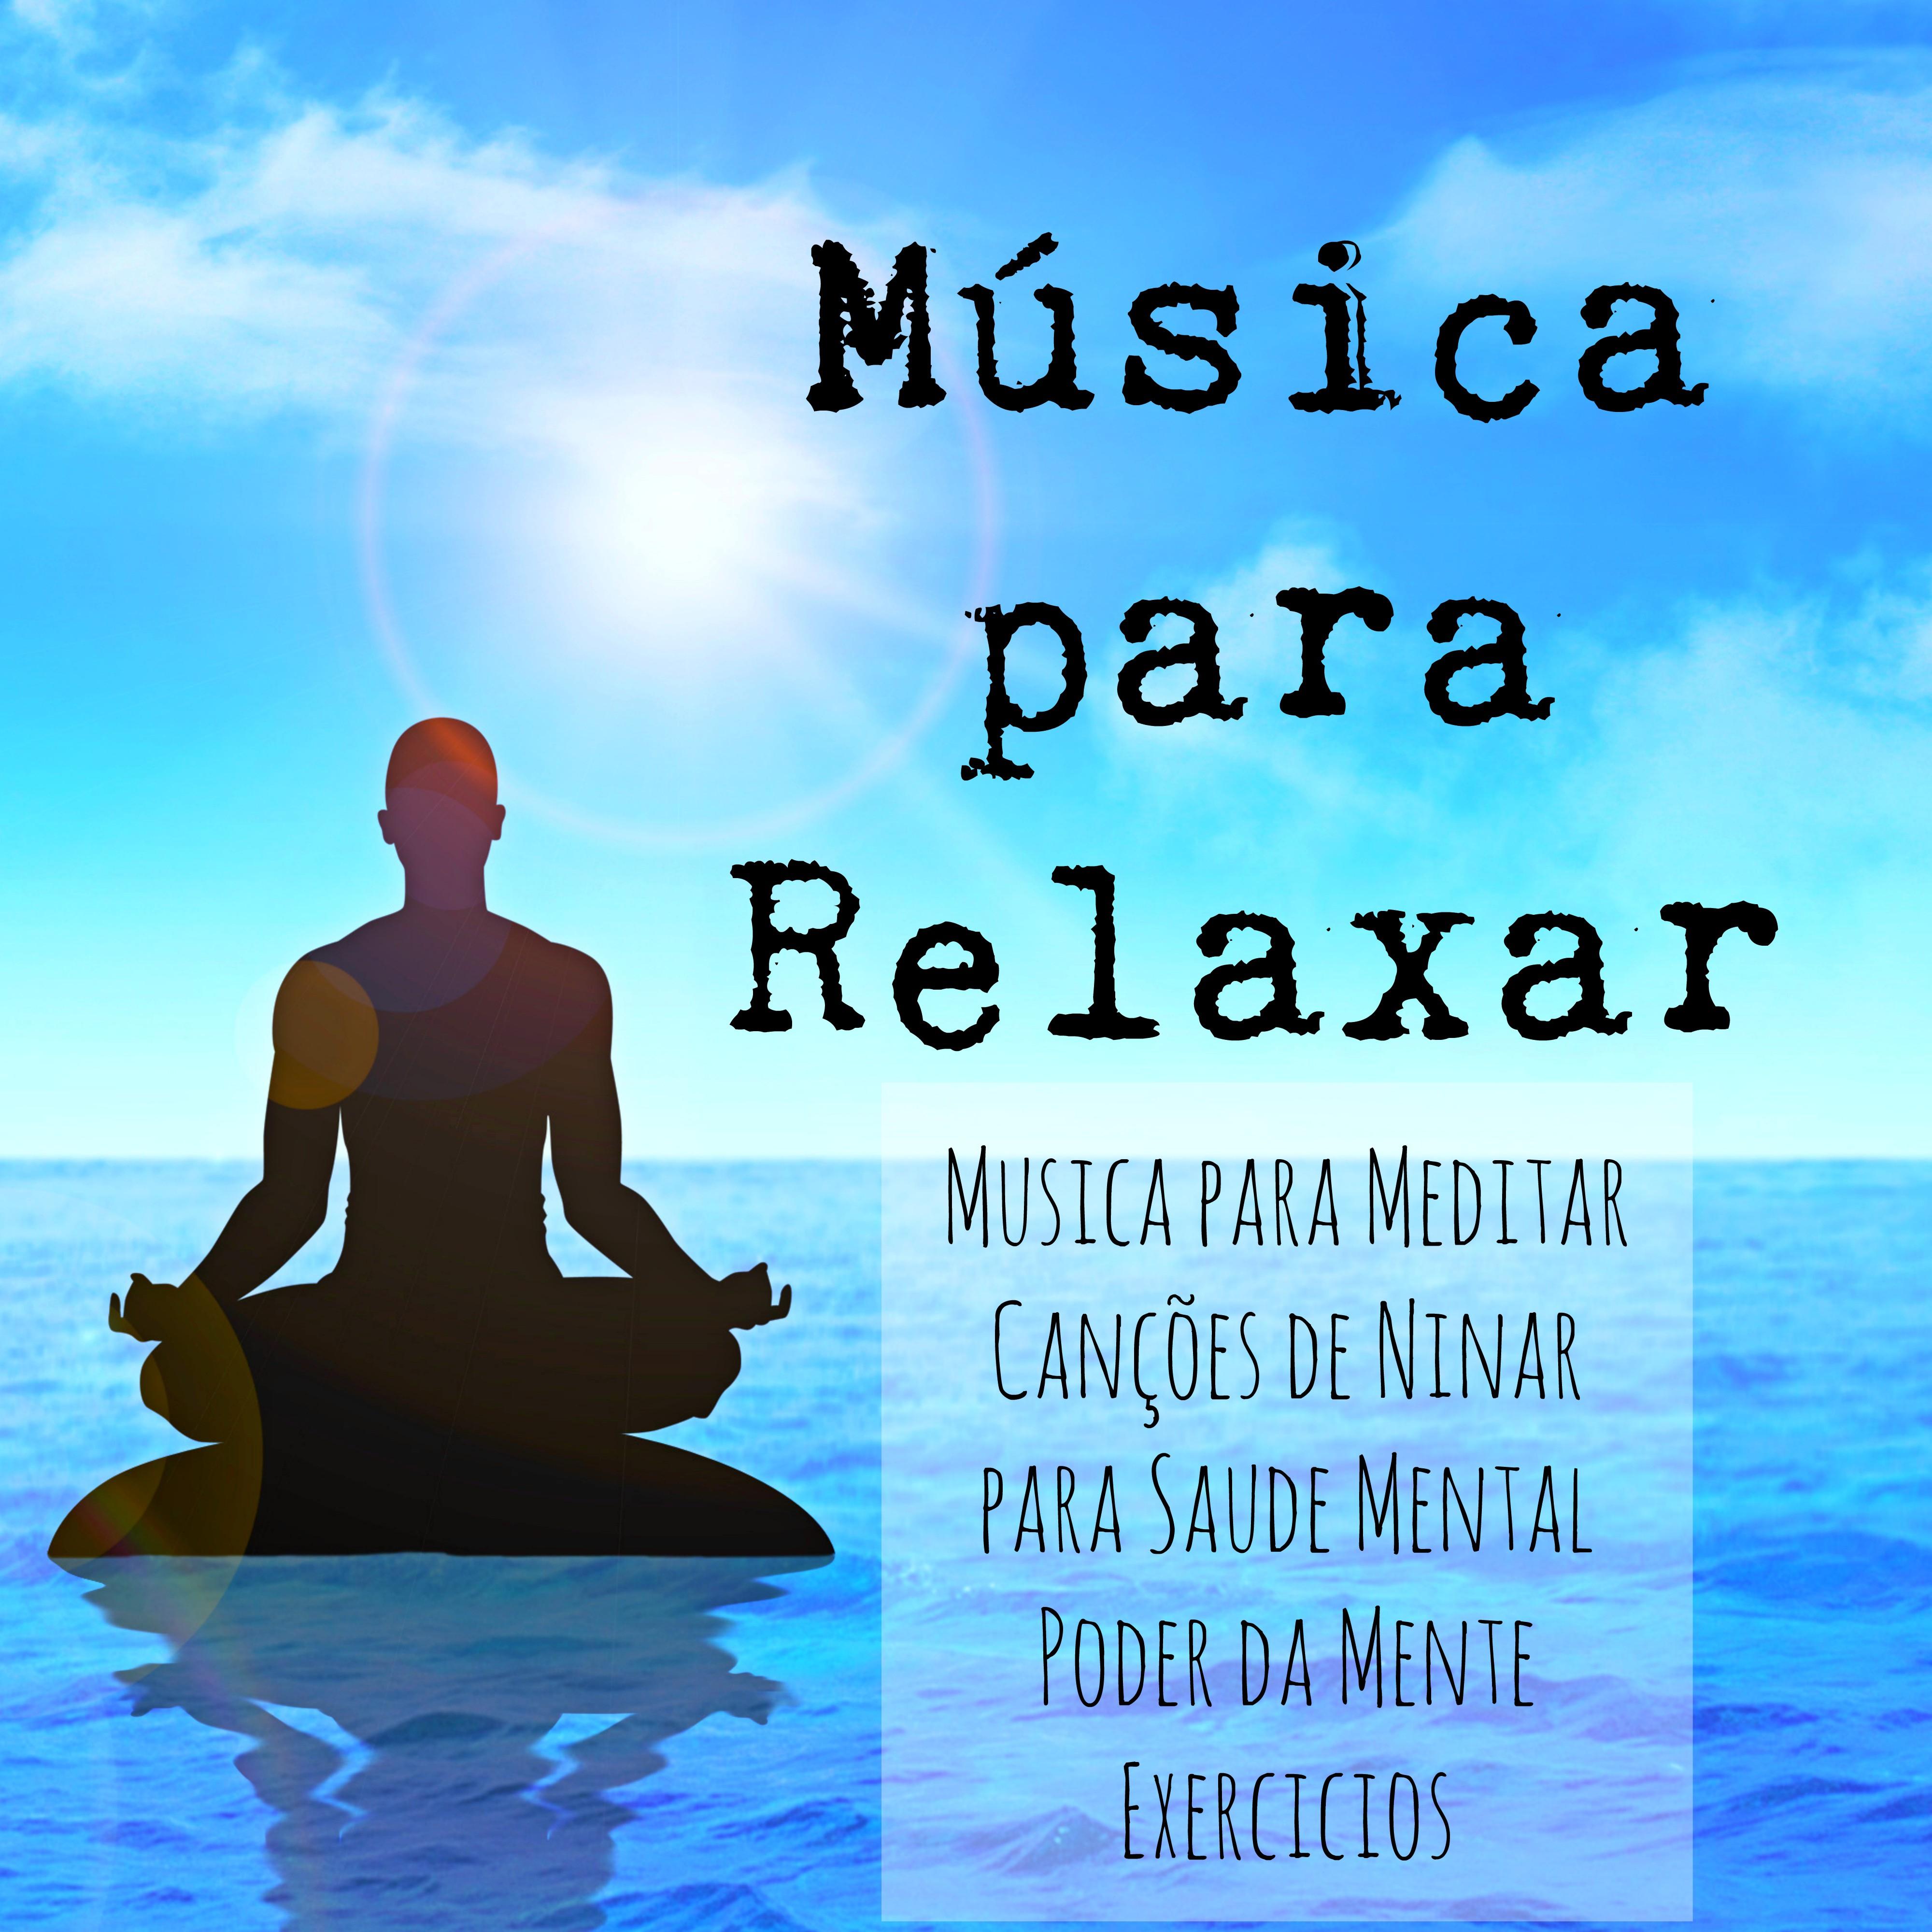 Mu sica para Relaxar  Musica para Meditar Can es de Ninar para Saude Mental Poder da Mente Exercicios con Sons Doces Instrumentais da Natureza